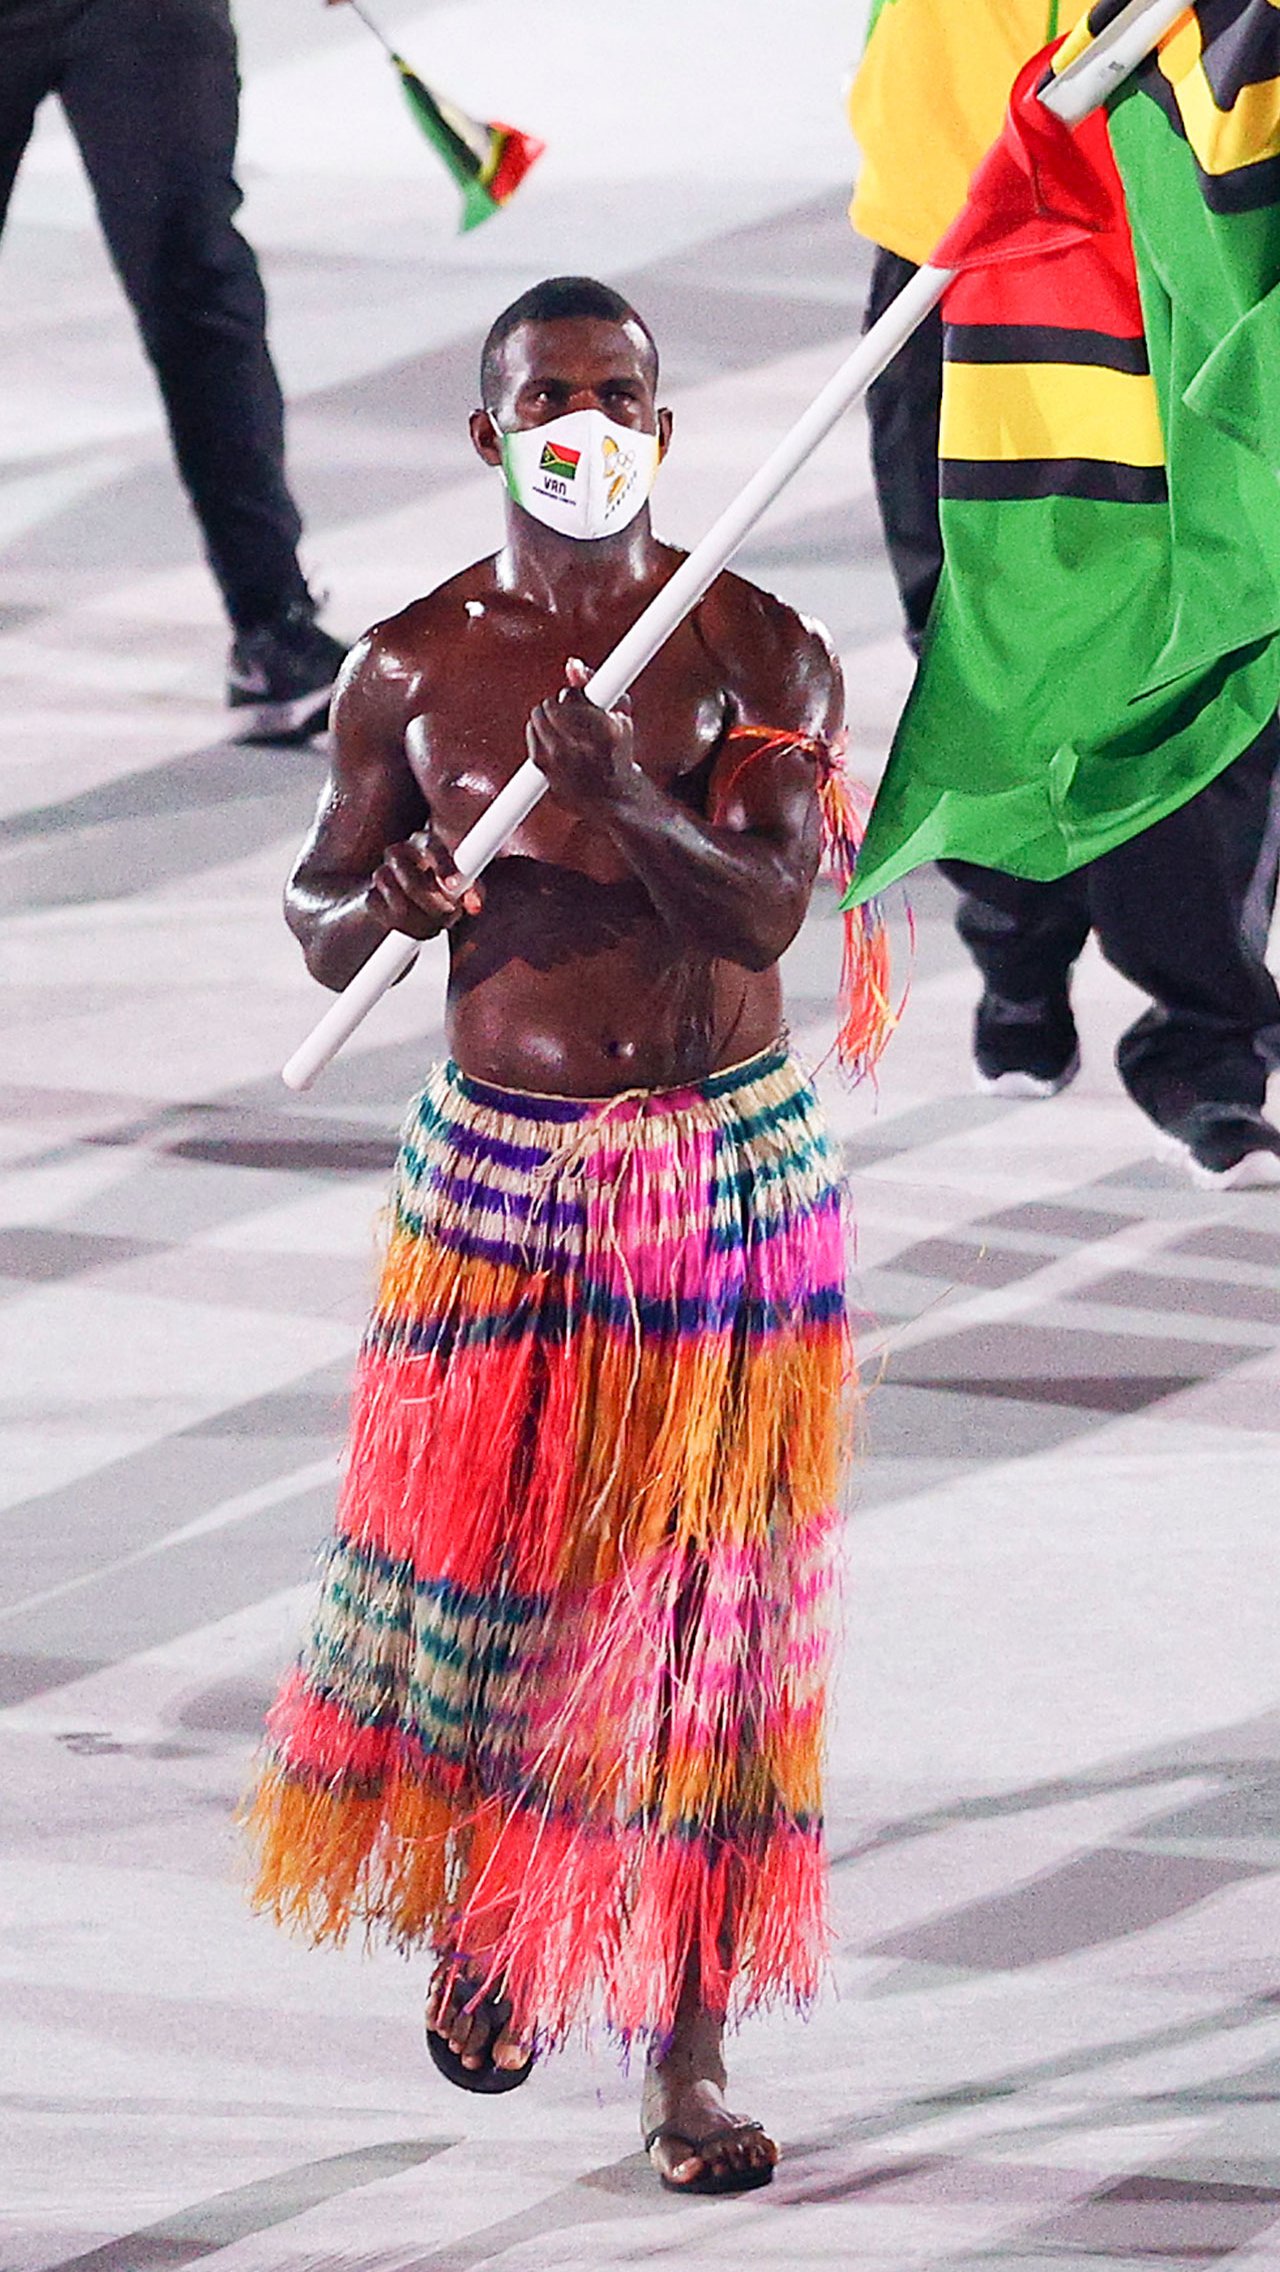 А вот знаменосец Вануату пришёл в разноцветной юбке в пол, а сам был обмазан маслом!